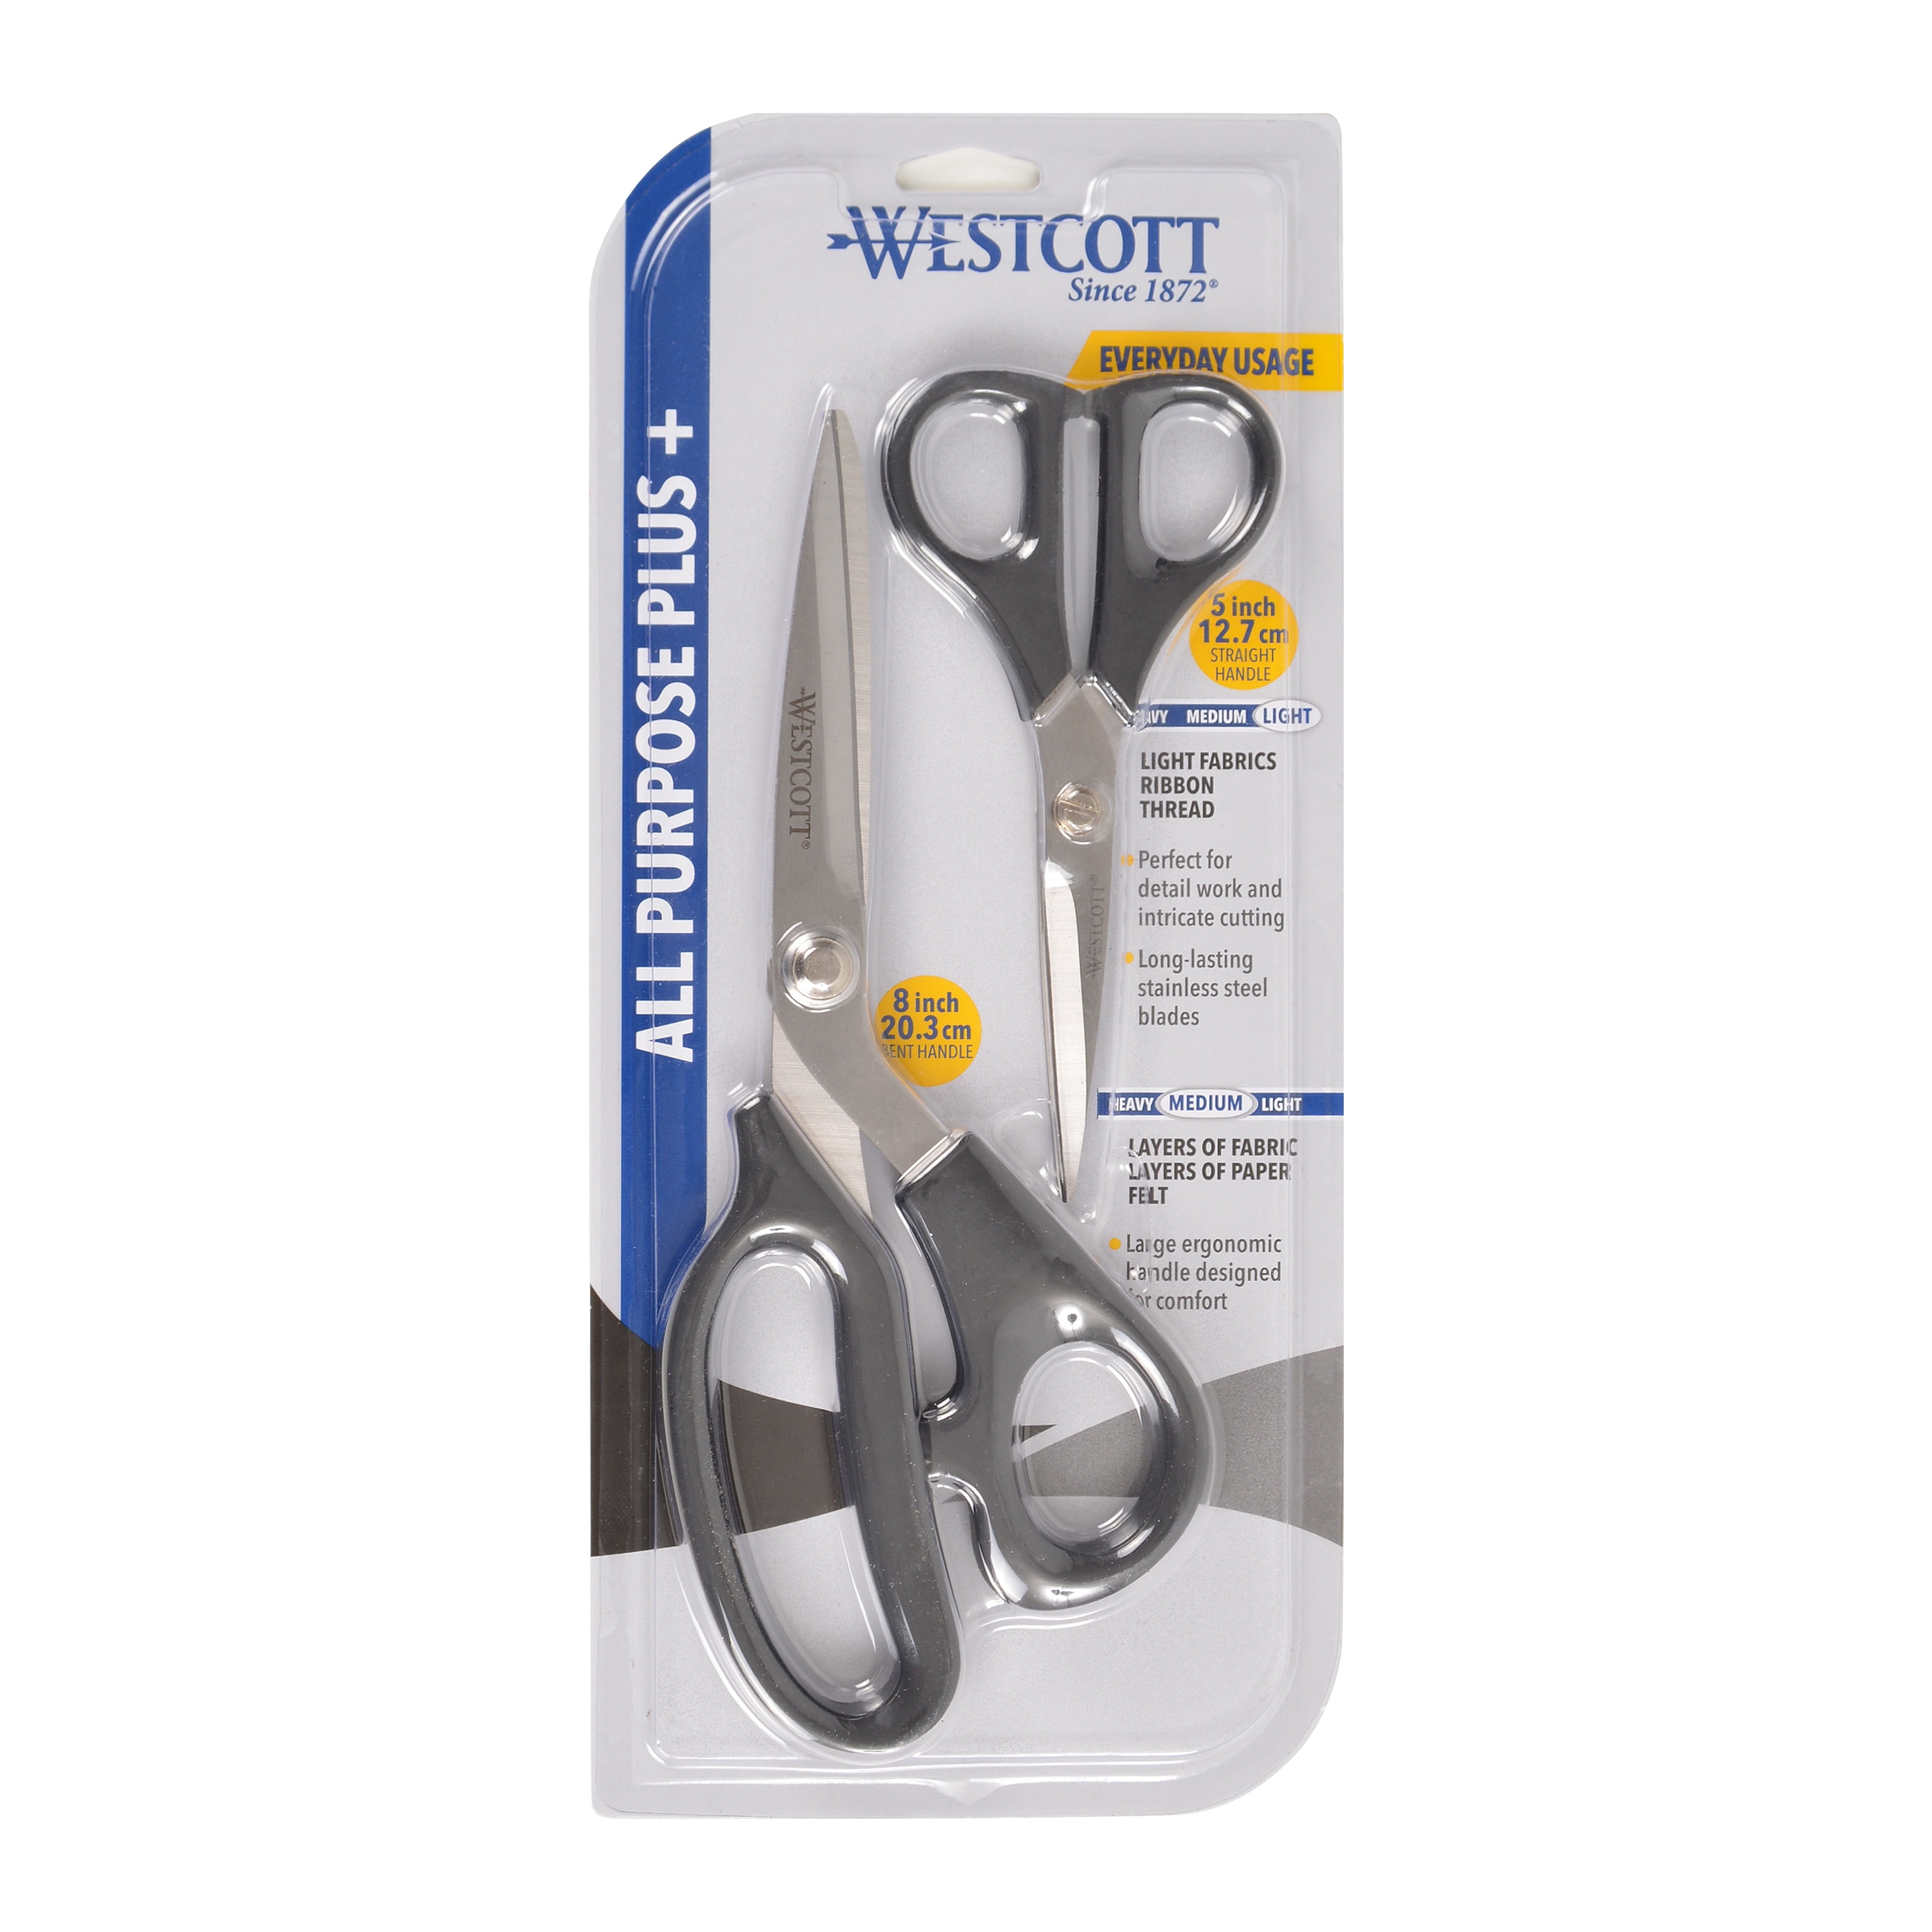 Westcott All Purpose Plus 9 Bent Sewing Scissor (16410)